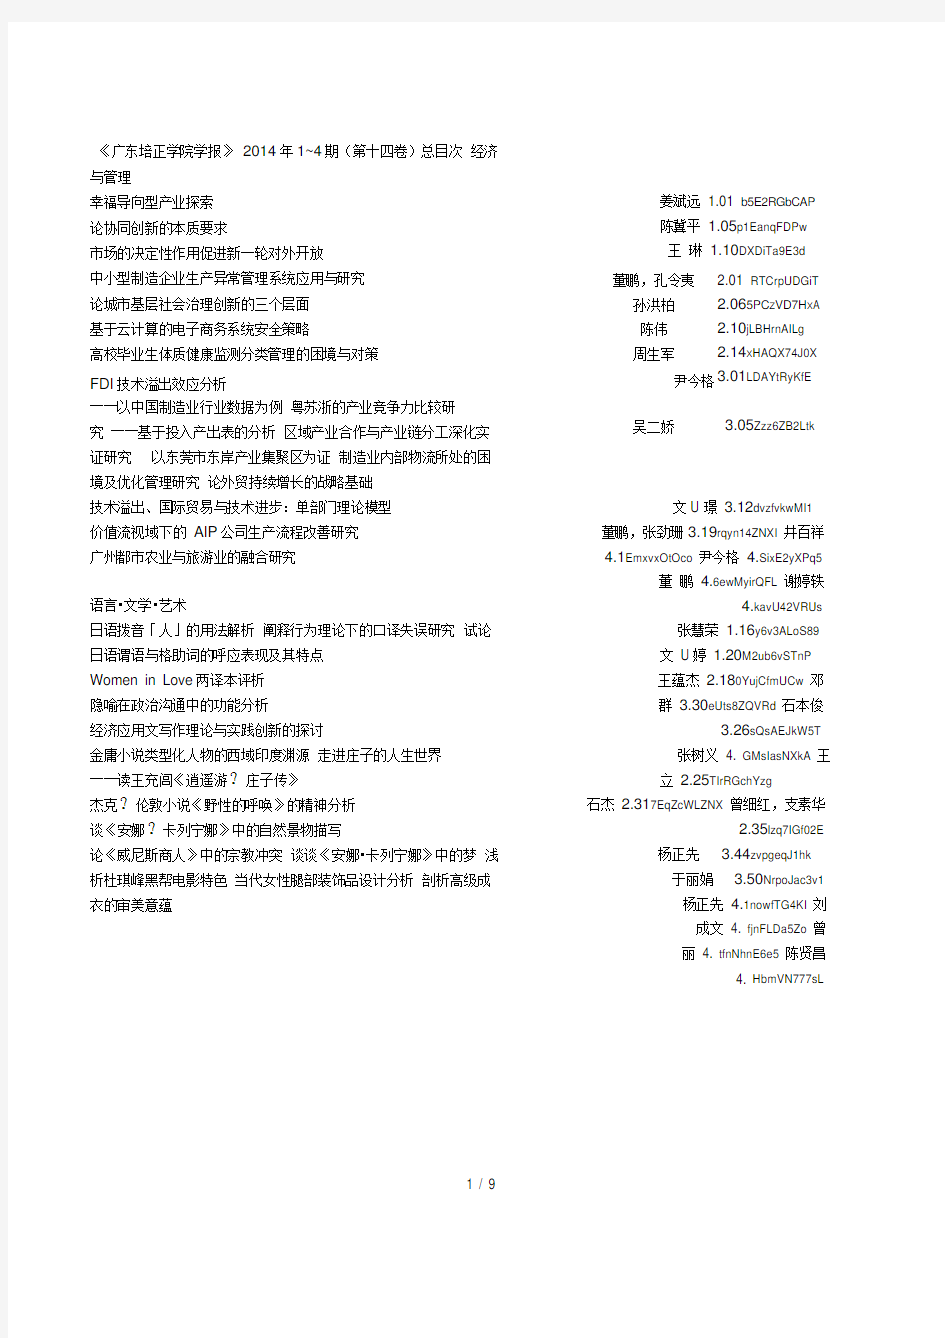 《广东培正学院学报》2014年1~4期(第十四卷)总目次